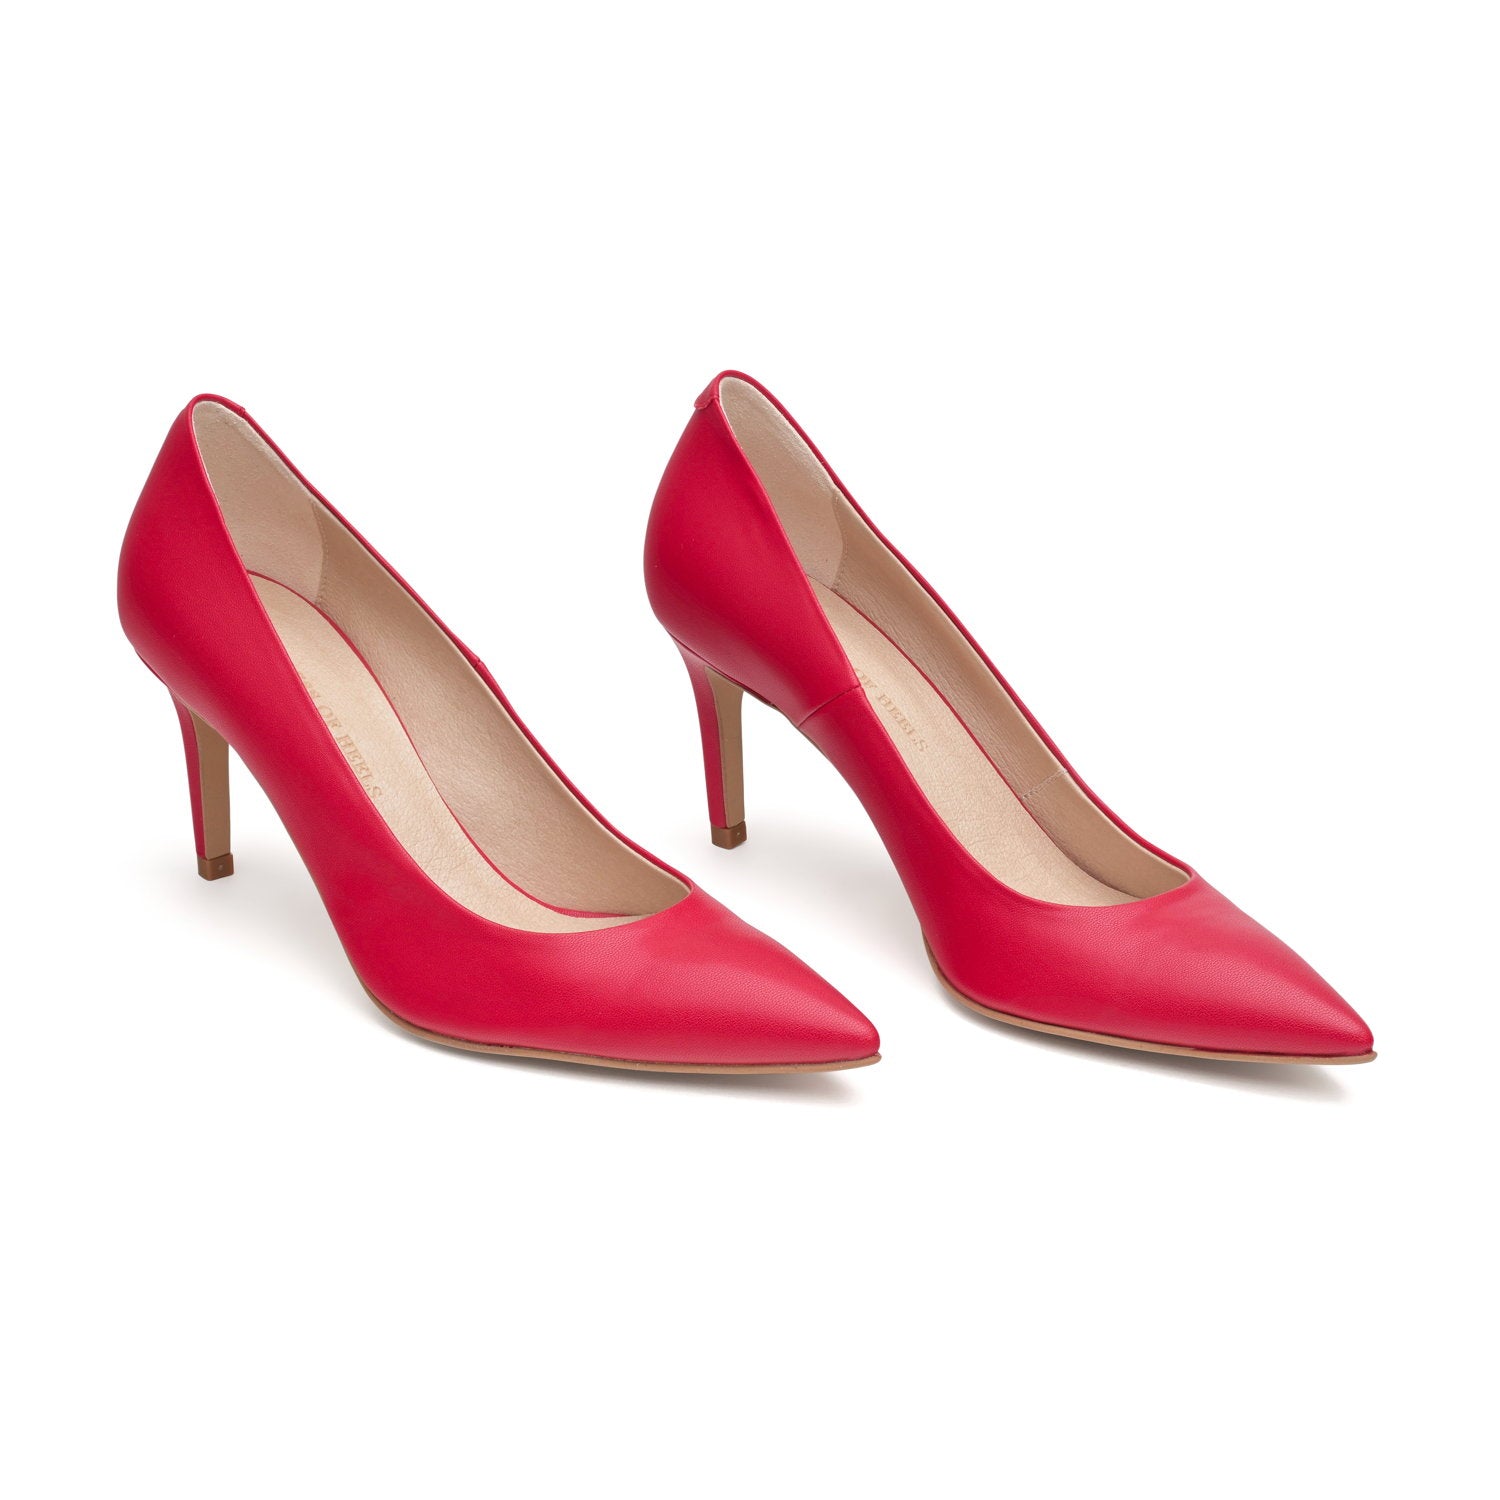 The Red - vegan 70mm heels